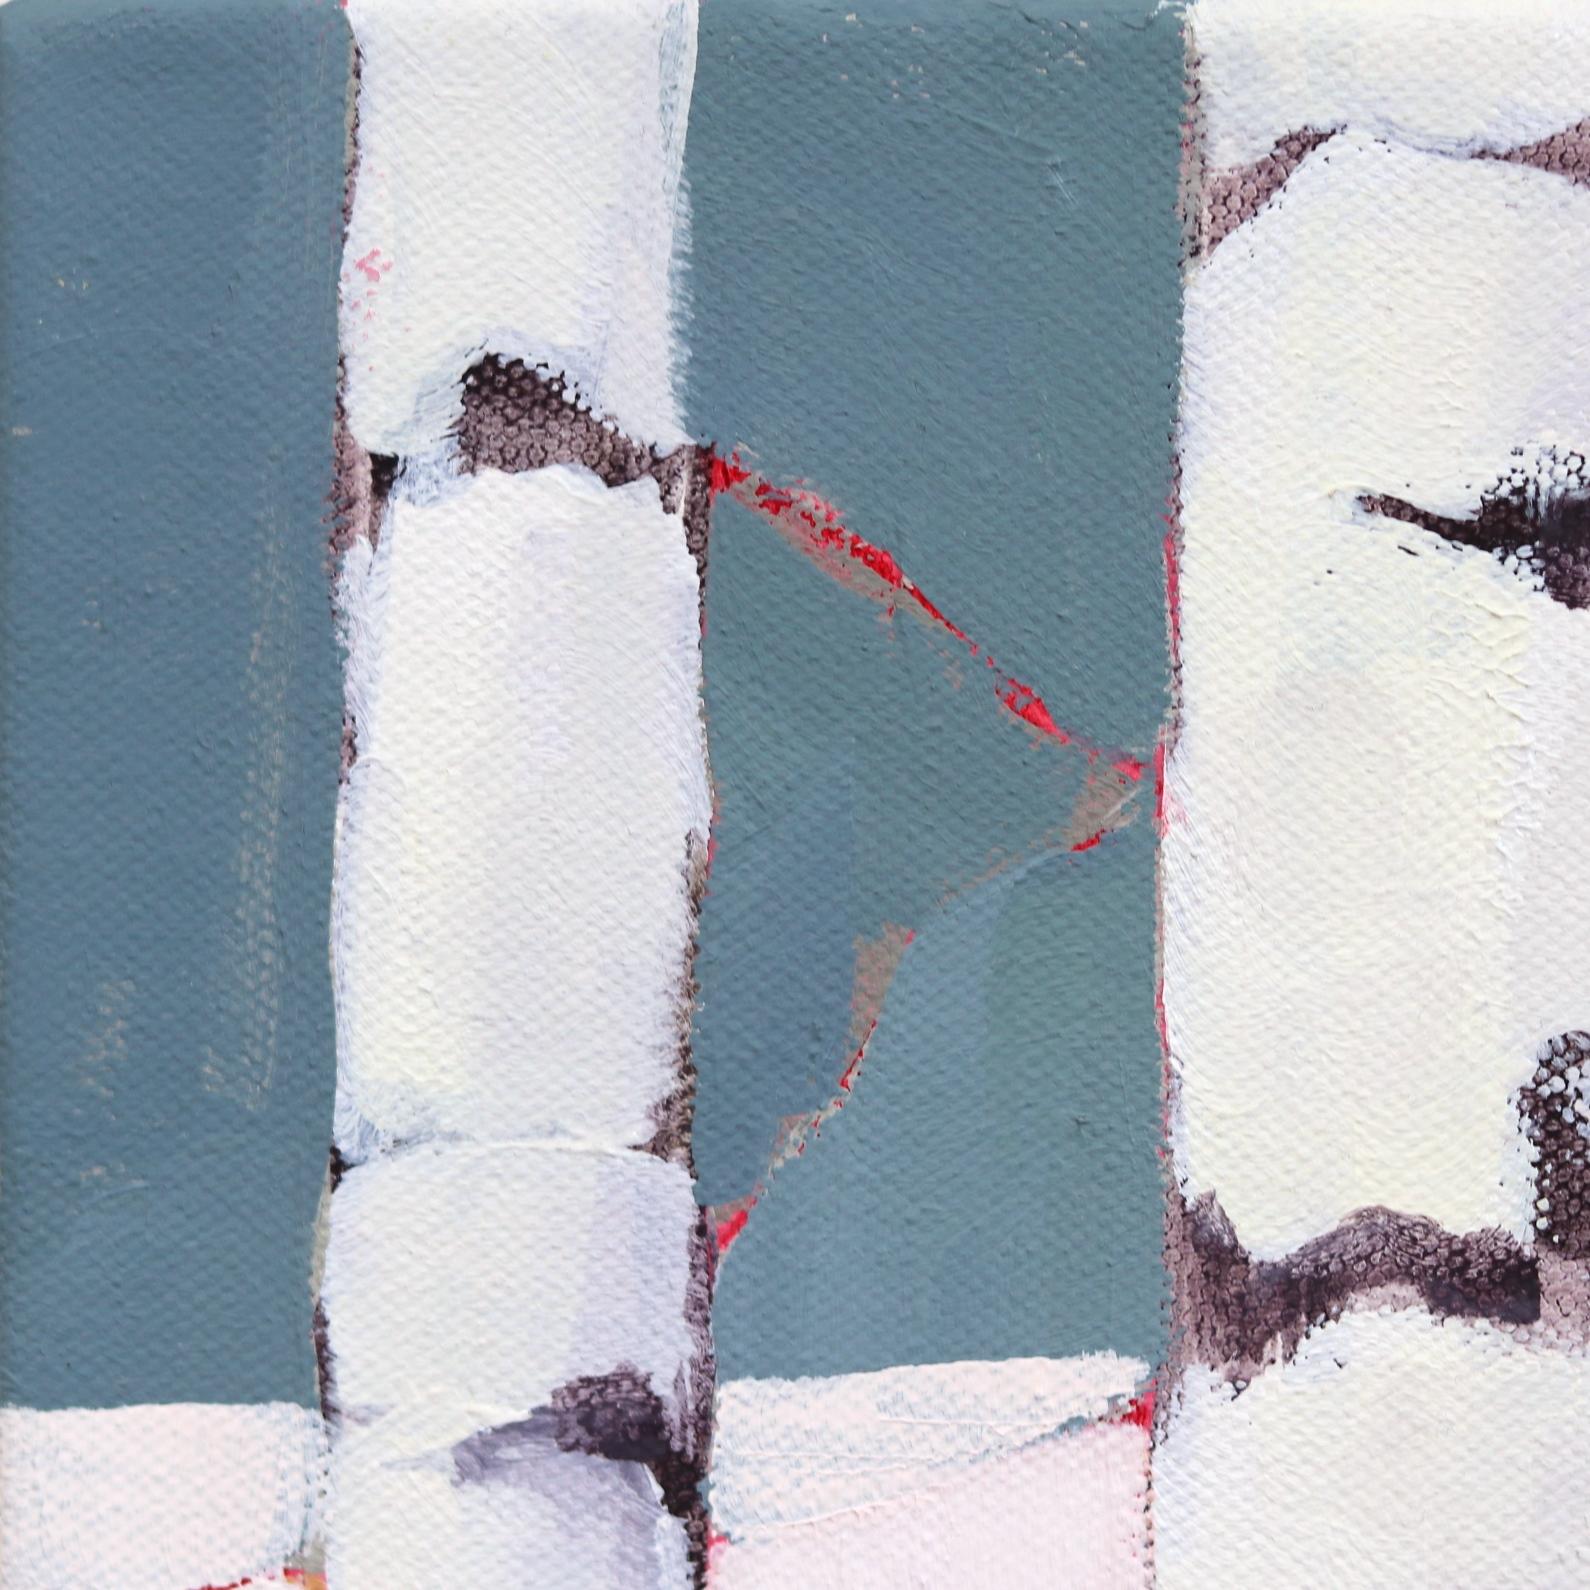 Beth Munros originelle Gemälde, egal ob es sich um Stillleben, Landschaften oder abstrakte Formen handelt, konzentrieren sich auf Muster, Farben und Texturen. Munro lässt sich von allem inspirieren, von den impressionistischen Werken Cezannes und